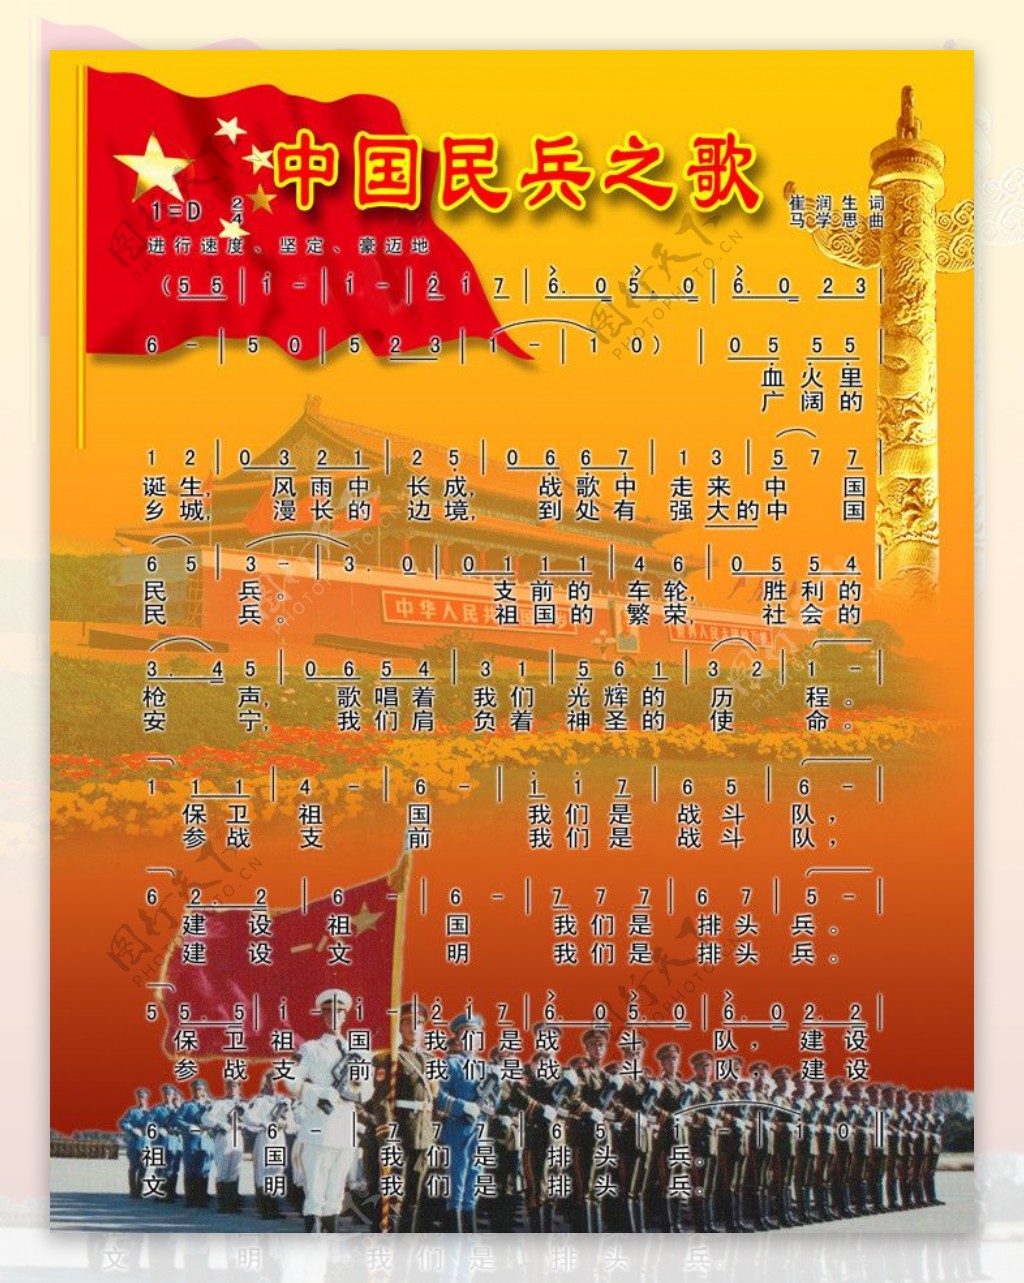 中国民兵之歌图片